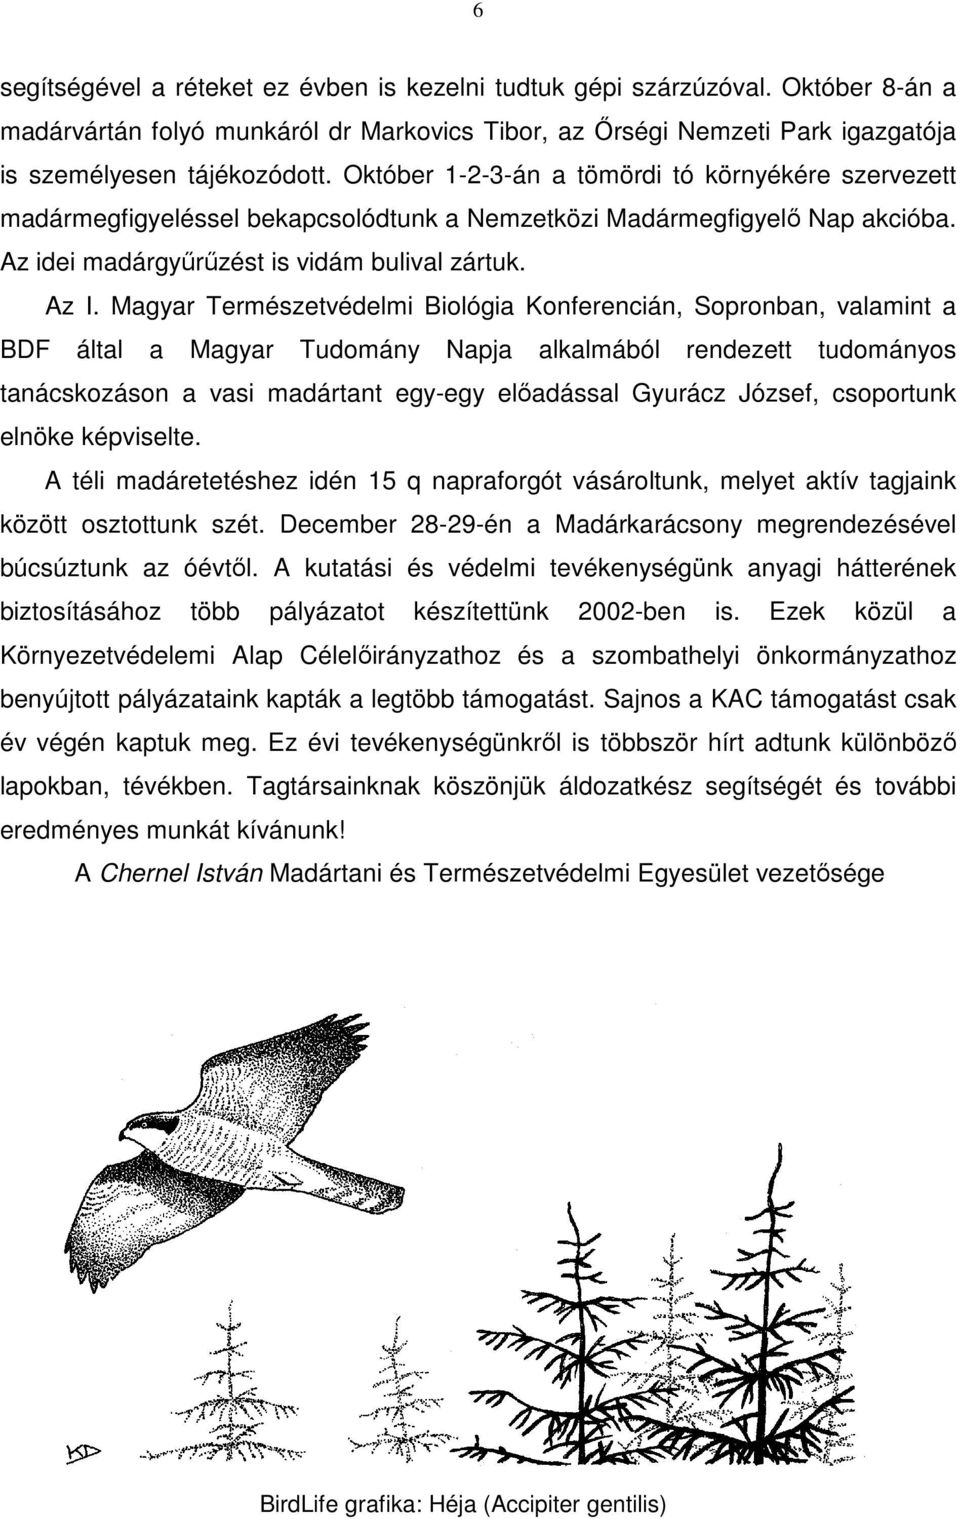 Magyar Természetvédelmi Biológia Konferencián, Sopronban, valamint a BDF által a Magyar Tudomány Napja alkalmából rendezett tudományos tanácskozáson a vasi madártant egy-egy előadással Gyurácz